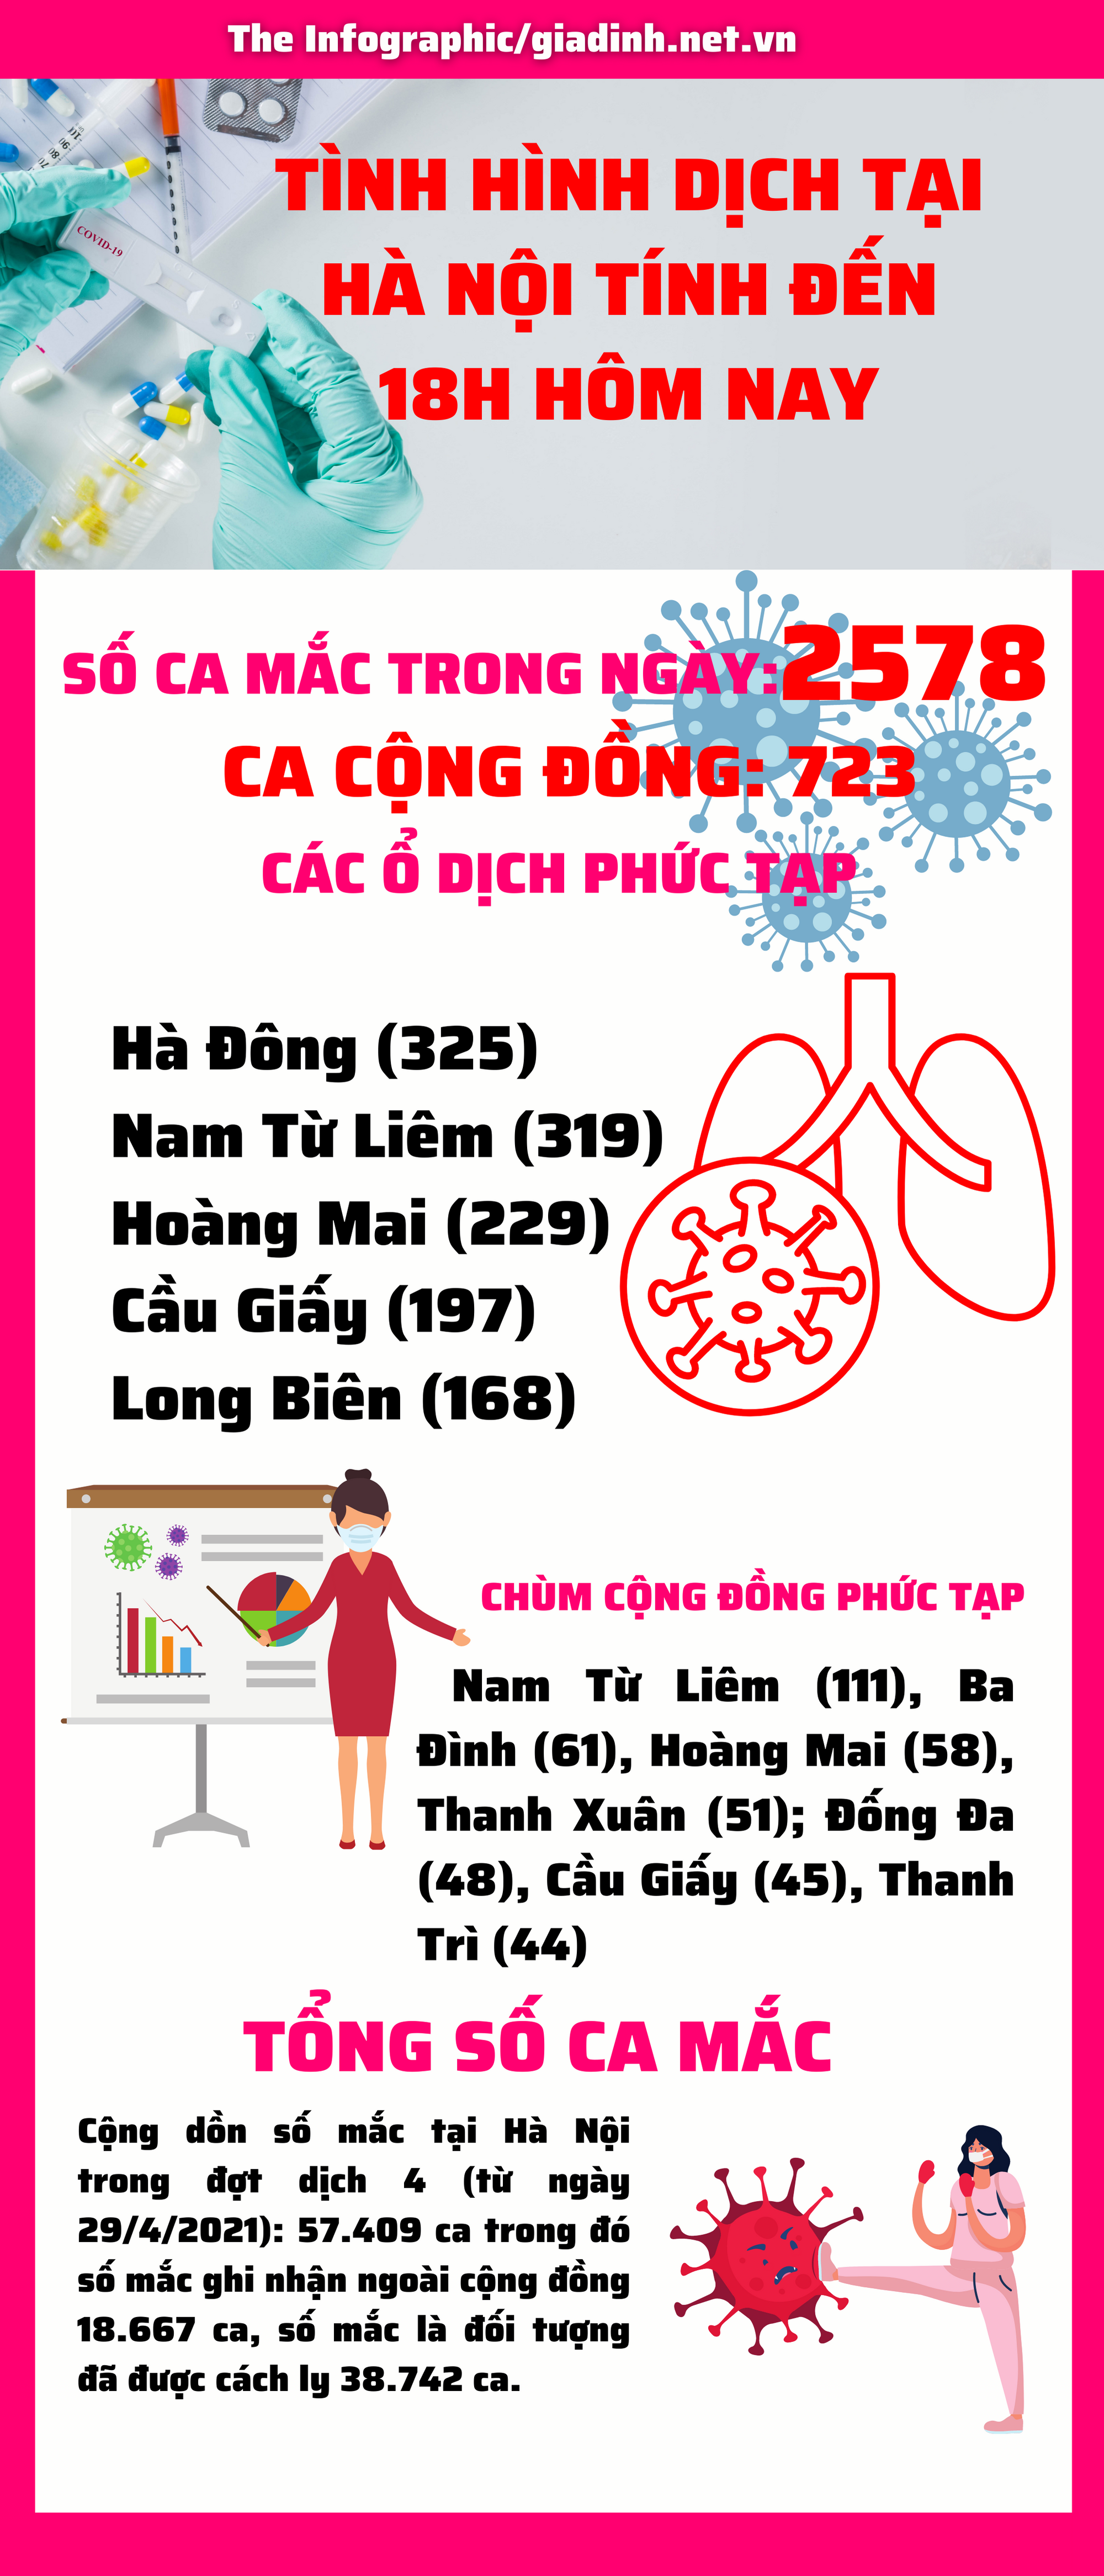 NÓNG: Hà Nội ghi nhận tăng đột biến với 2578 ca COVID-19 mới, biểu đồ dựng đứng với 723 ca cộng đồng - Ảnh 1.